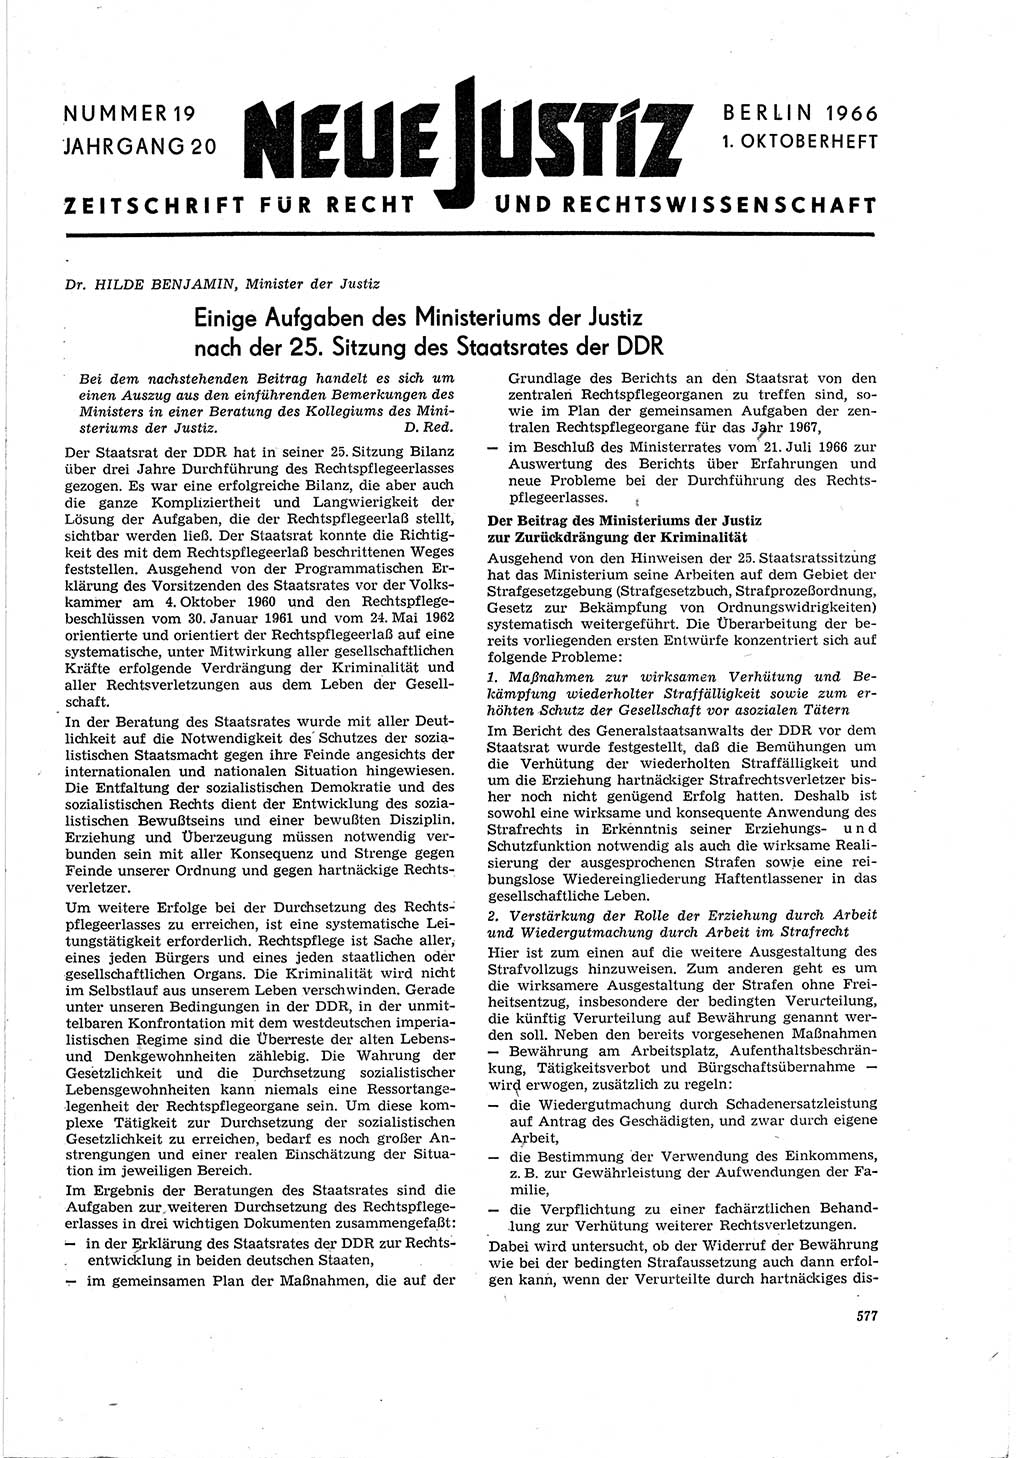 Neue Justiz (NJ), Zeitschrift für Recht und Rechtswissenschaft [Deutsche Demokratische Republik (DDR)], 20. Jahrgang 1966, Seite 577 (NJ DDR 1966, S. 577)